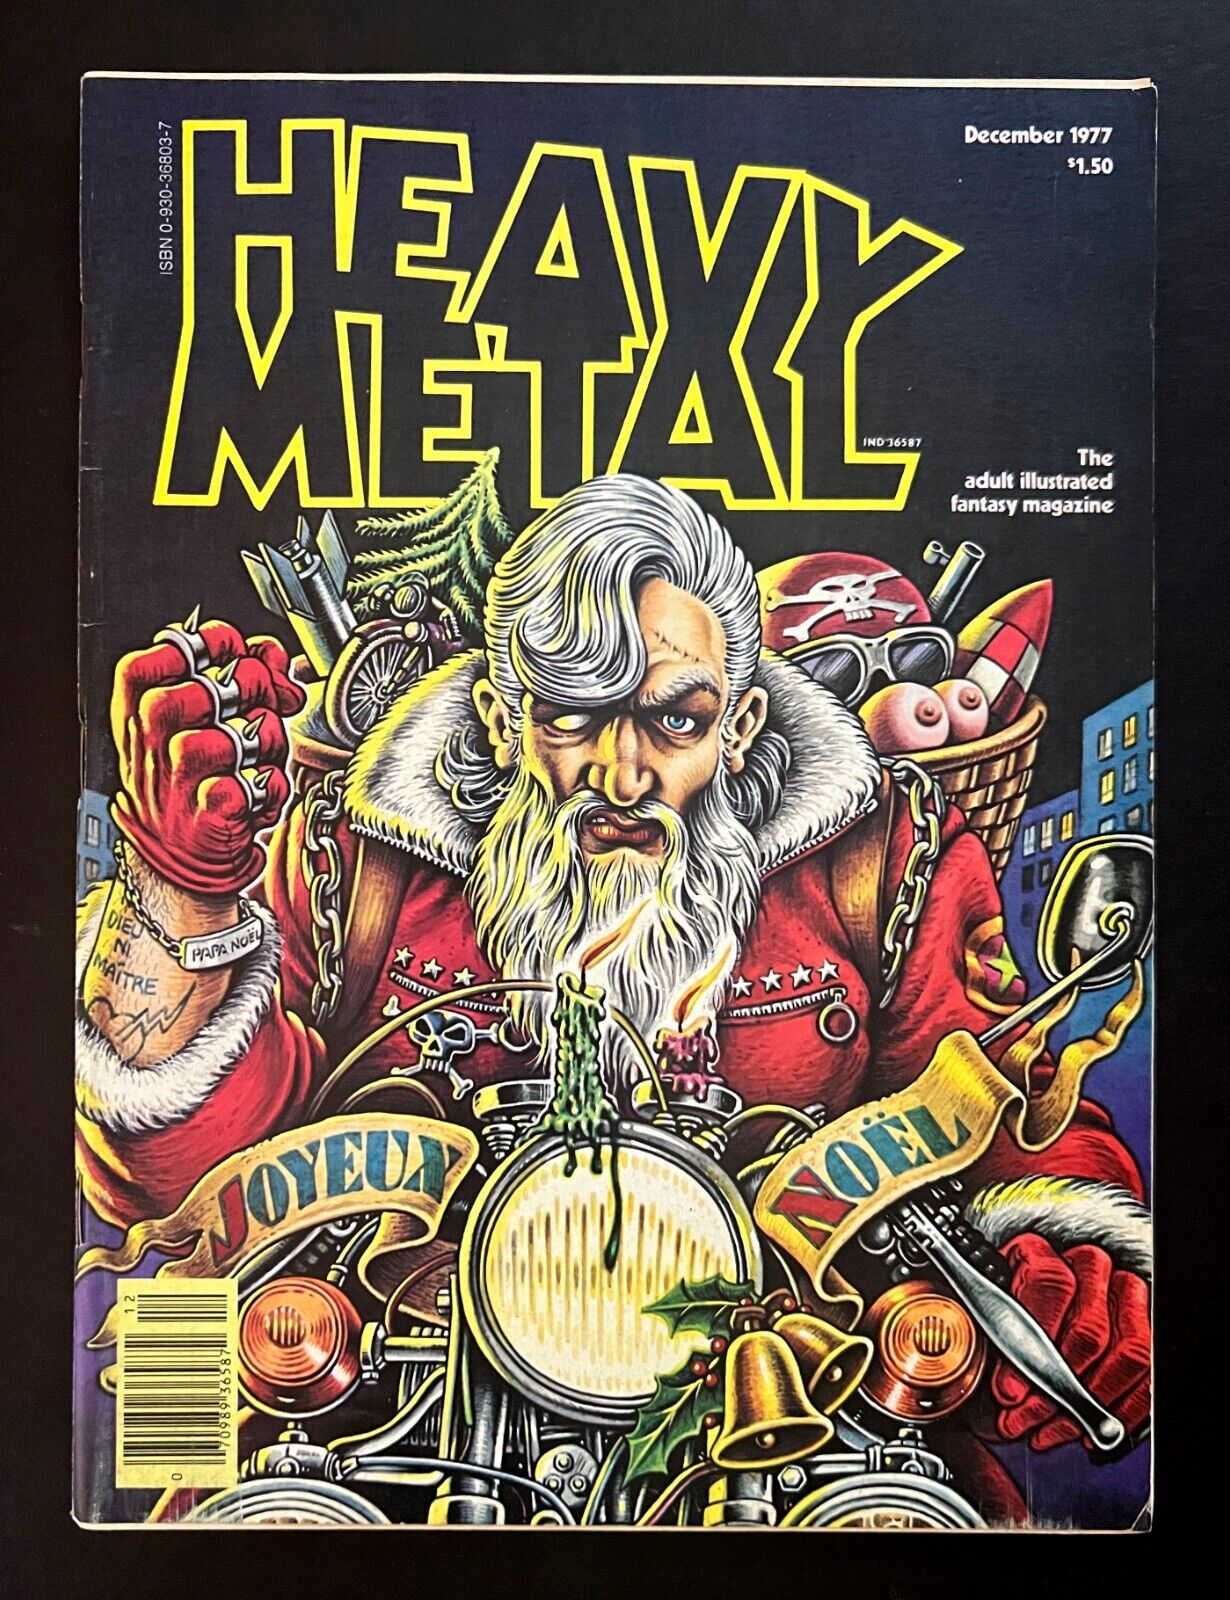 HEAVY METAL MAGAZINE #9 December 1977 Newsstand Moebius, Corben, Druillet Nice